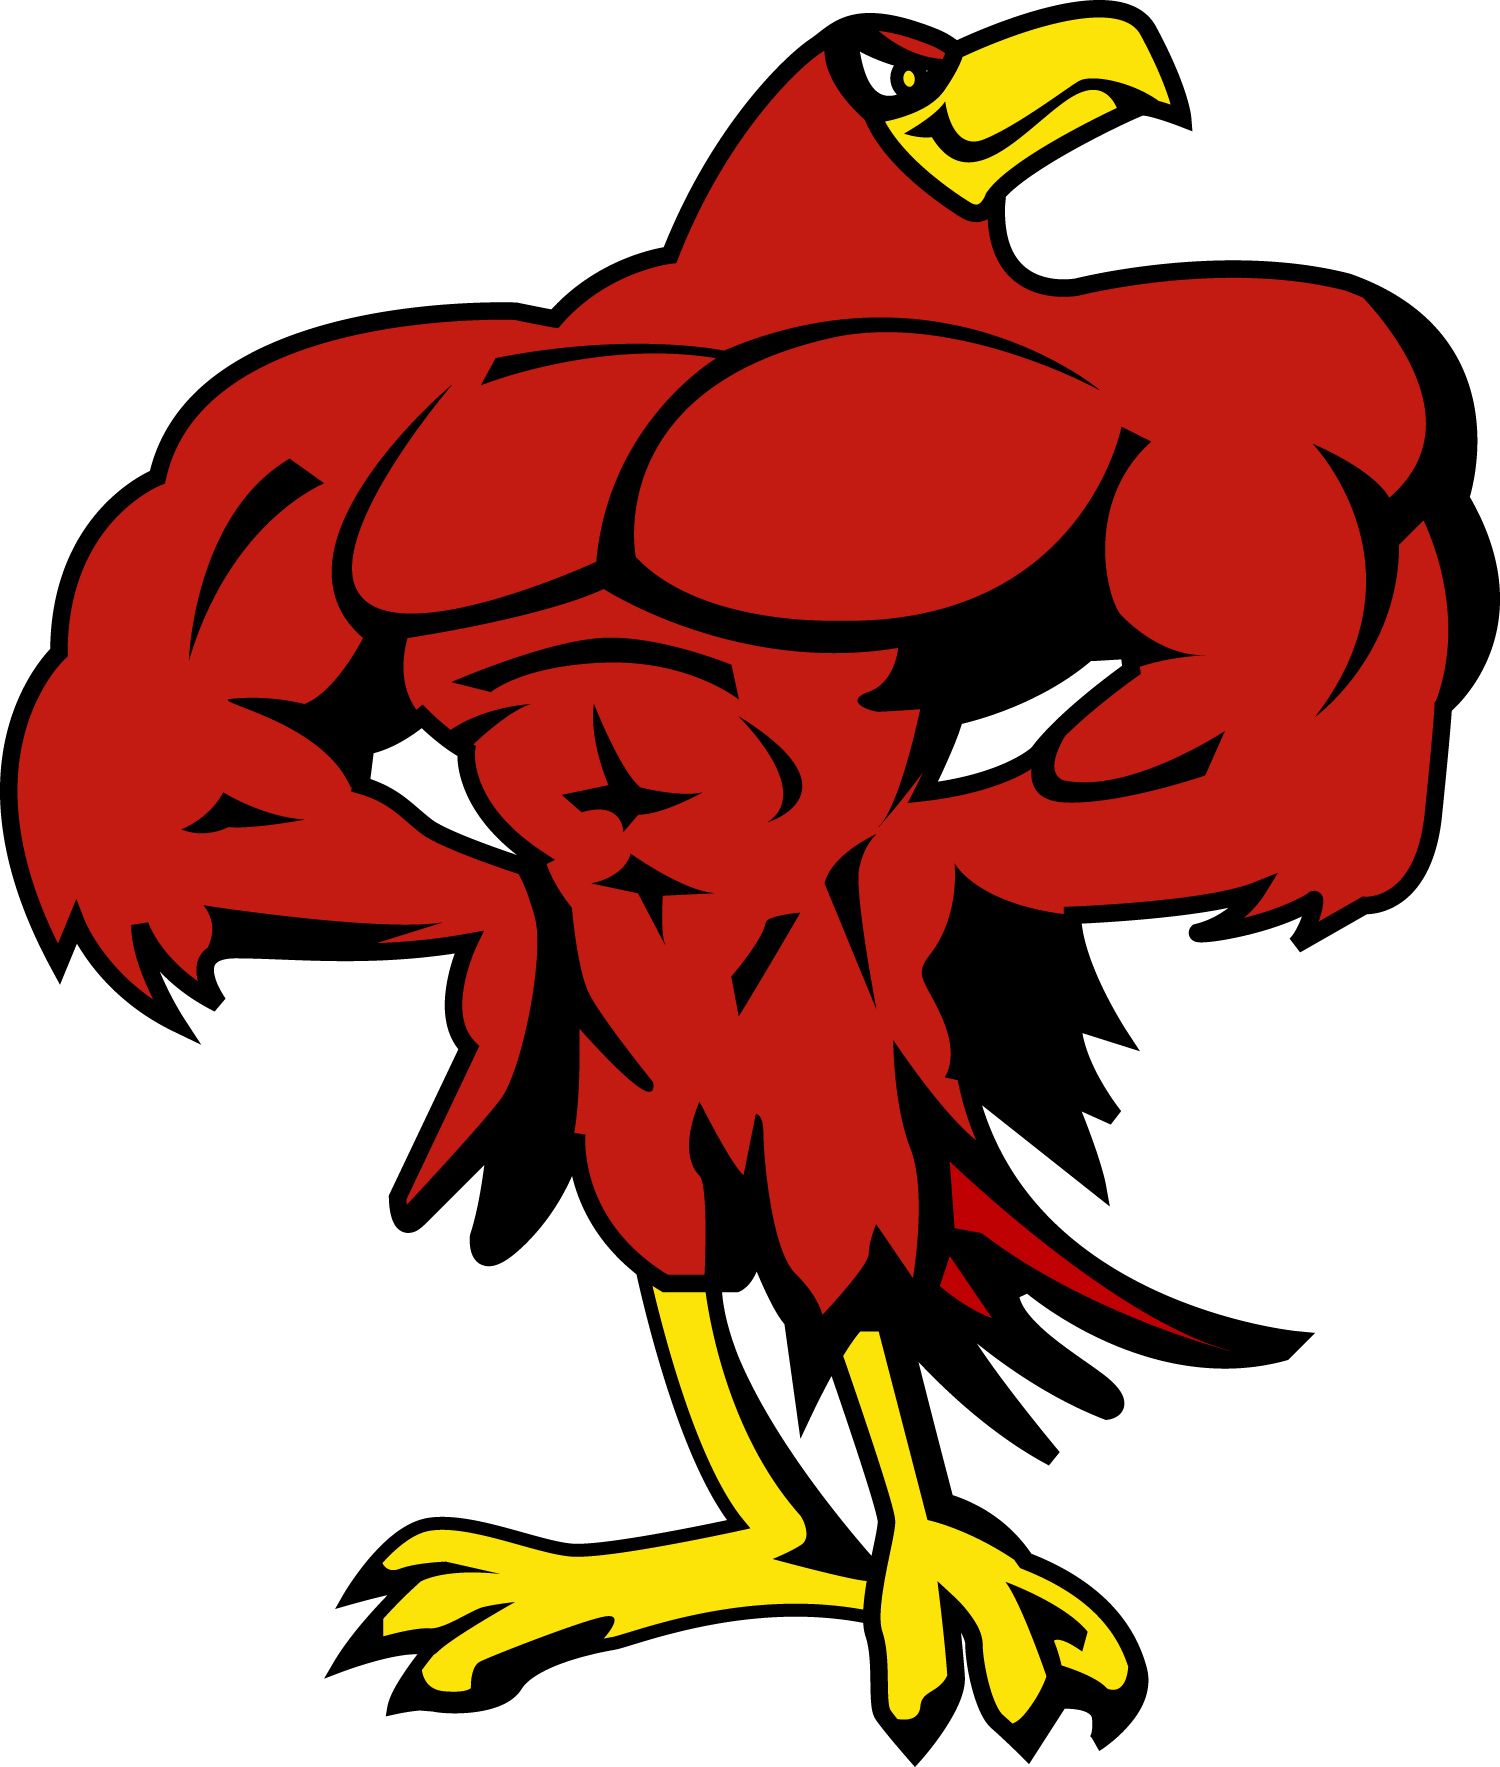 Falcon mascot in